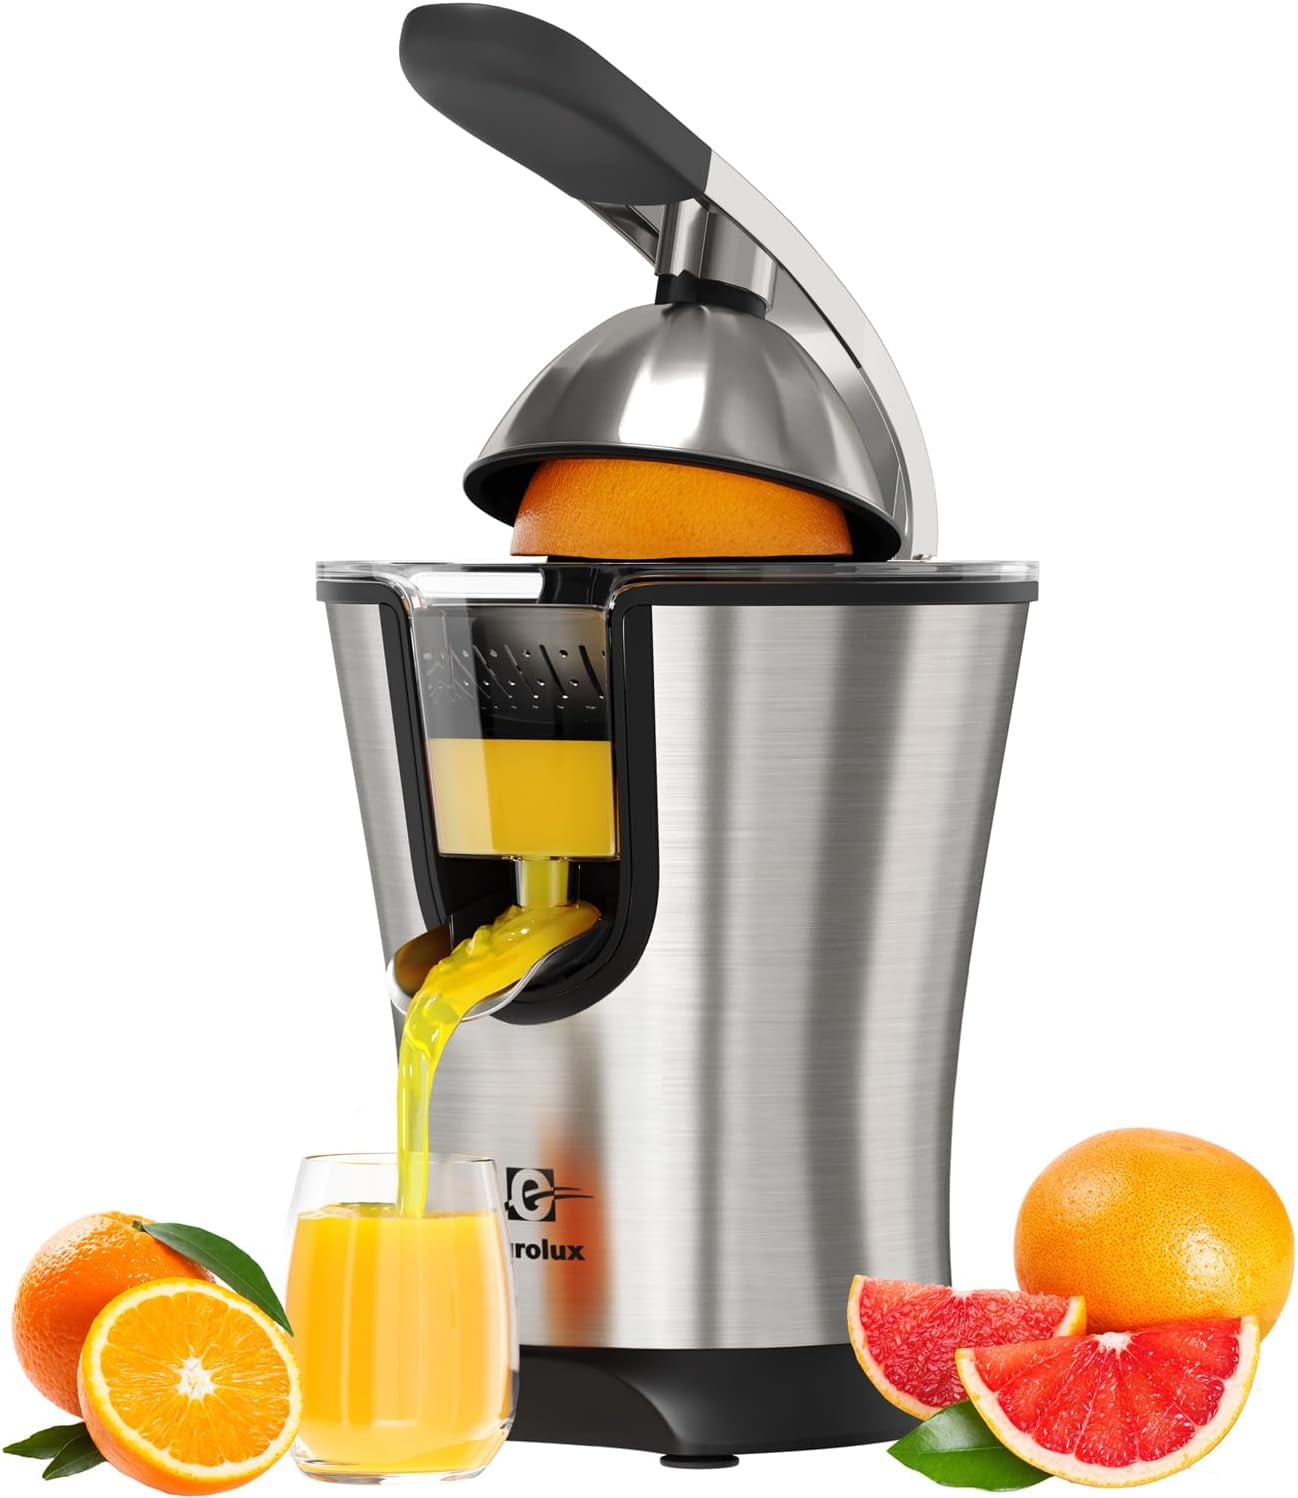 Champion 2000+ Juicer vegetable juicer, fruit juicer, juice